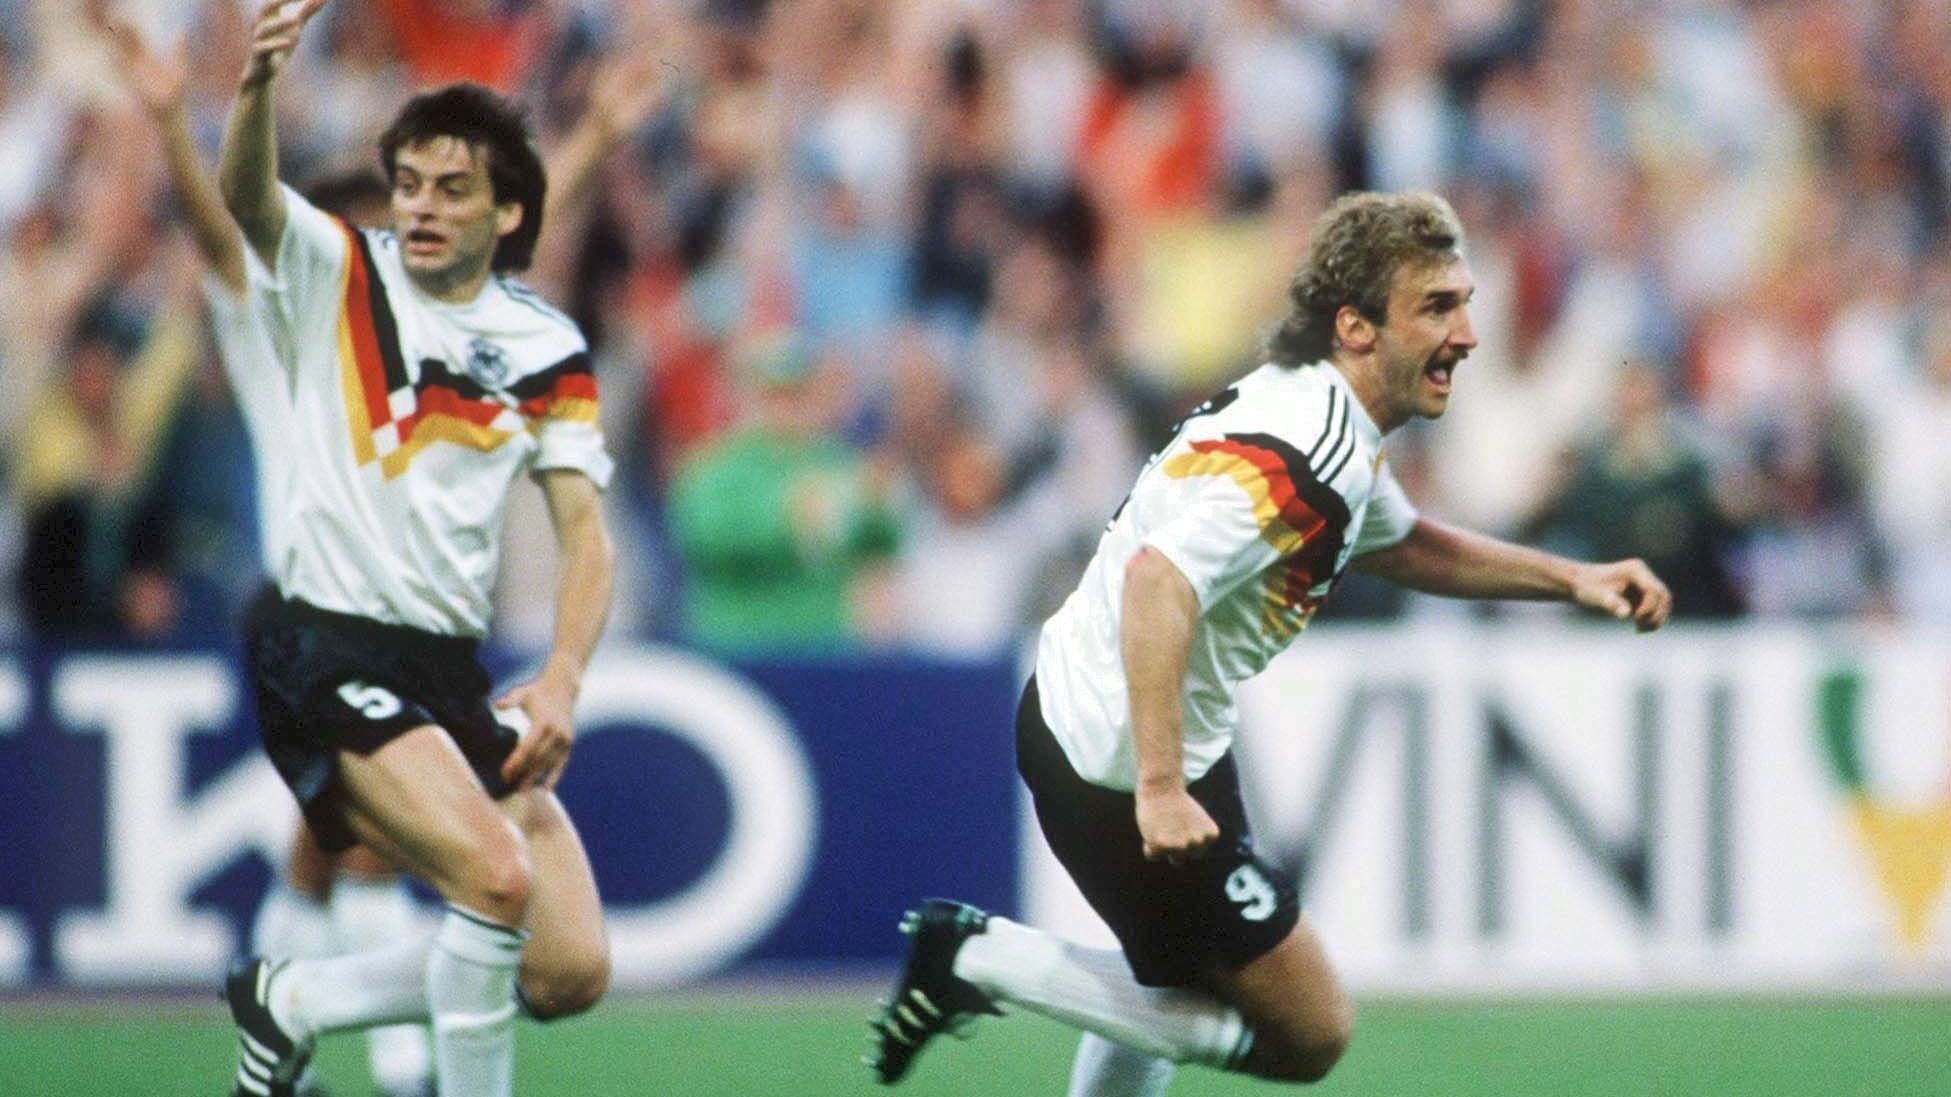 <strong>EM 1988, 3. Spieltag, Deutschland - Spanien 2:0</strong><br>Die Mannschaft von Beckenbauer erfüllte diese Bedingung und schnappte sich sogar die maximale Punkteausbeute. Der heutige Sportdirektor Völler trotzte der Kritik an seinen bisherigen Leistungen und knipste im Münchner Olympiastadion damals gleich doppelt. Für einen Platz auf dem Treppchen reichte das trotzdem nicht: Der spätere Weltmeister Niederlande bezwang Deutschland im Halbfinale mit 2:1.